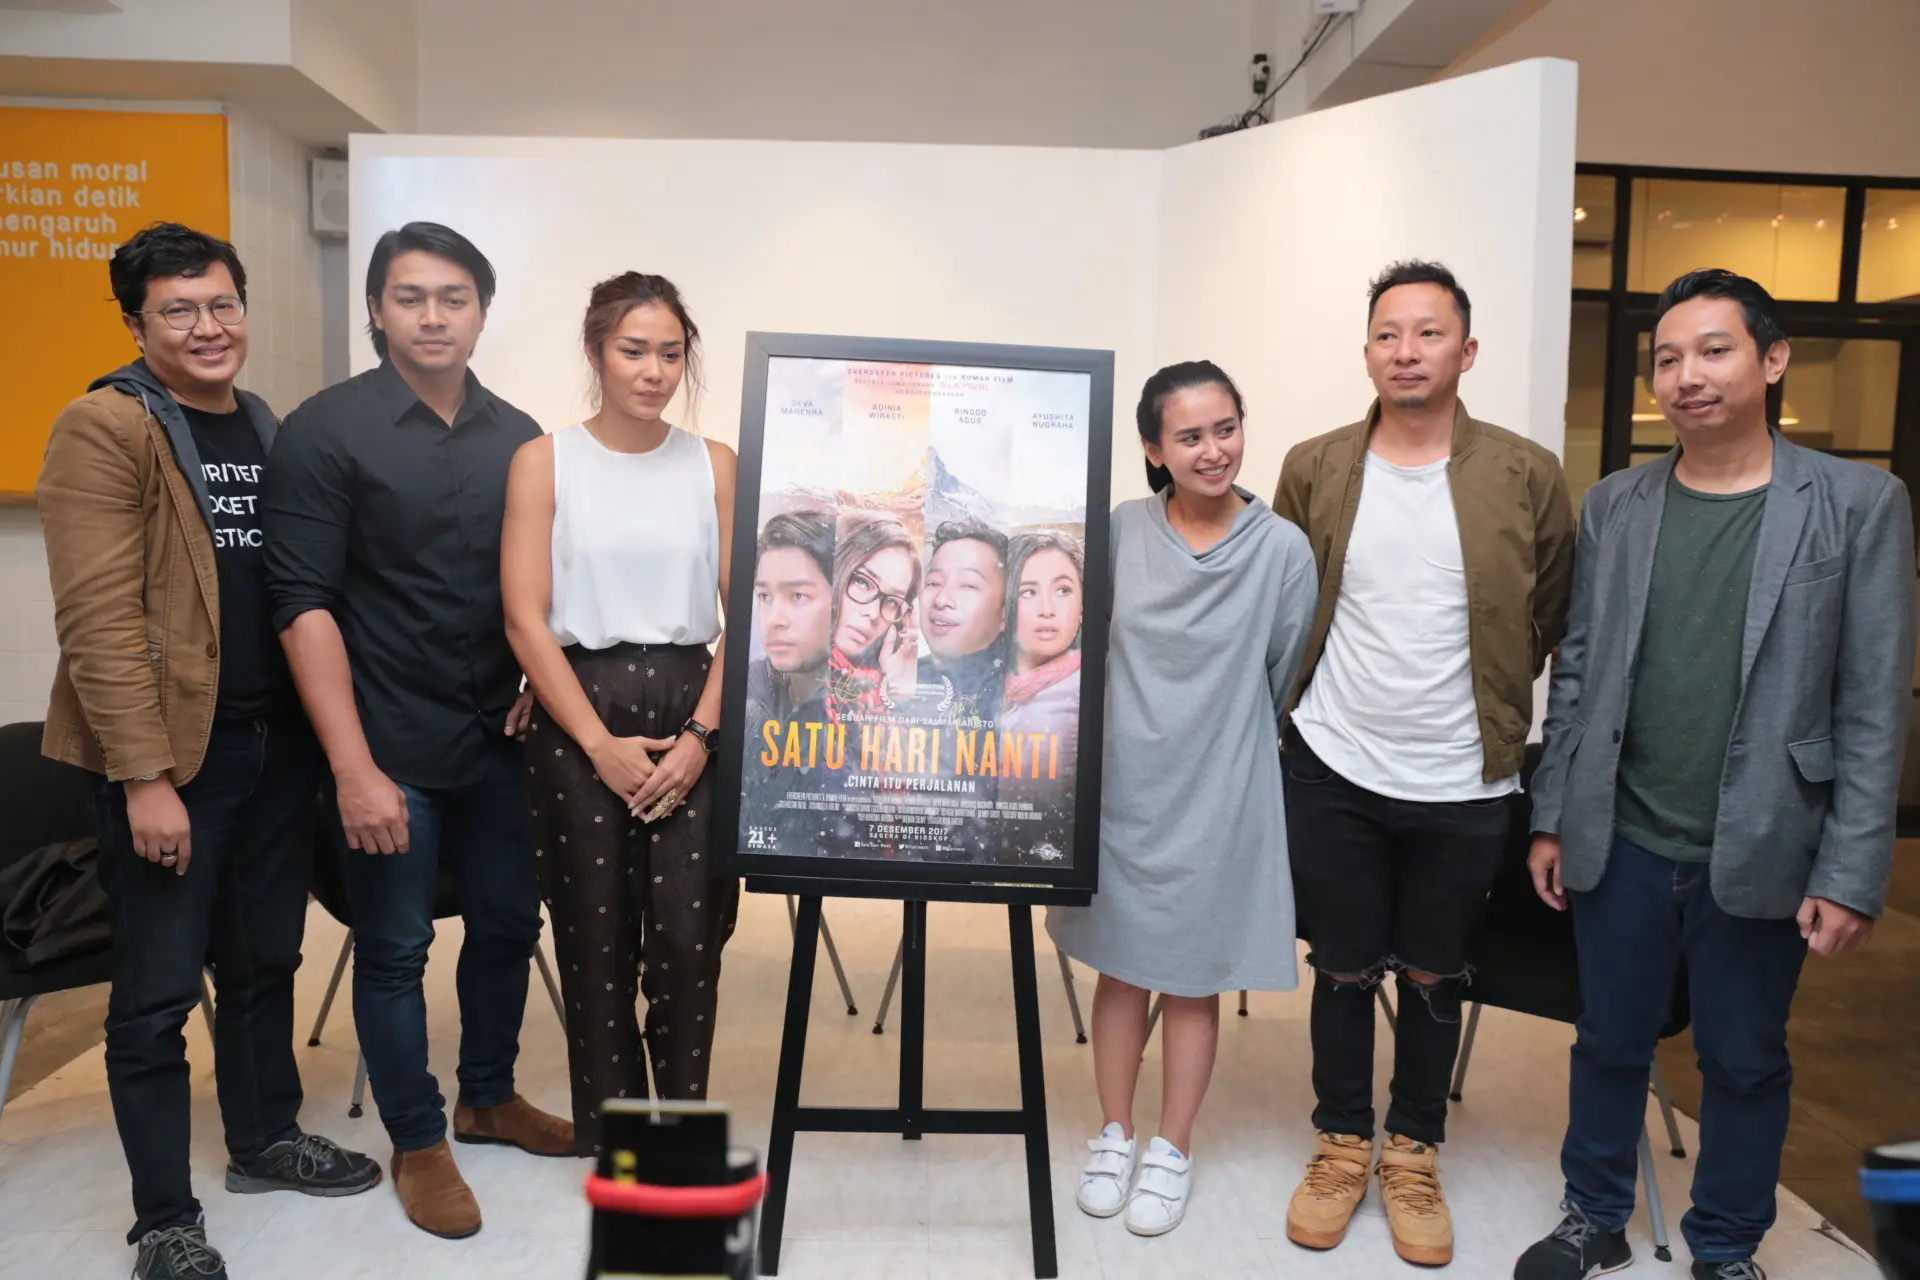 Film kolaborasi Indonesia dan Swiss ini akan tayang di bioskop pada 7 Desember 2017 mendatang. (Adrian Putra/Bintang.com)